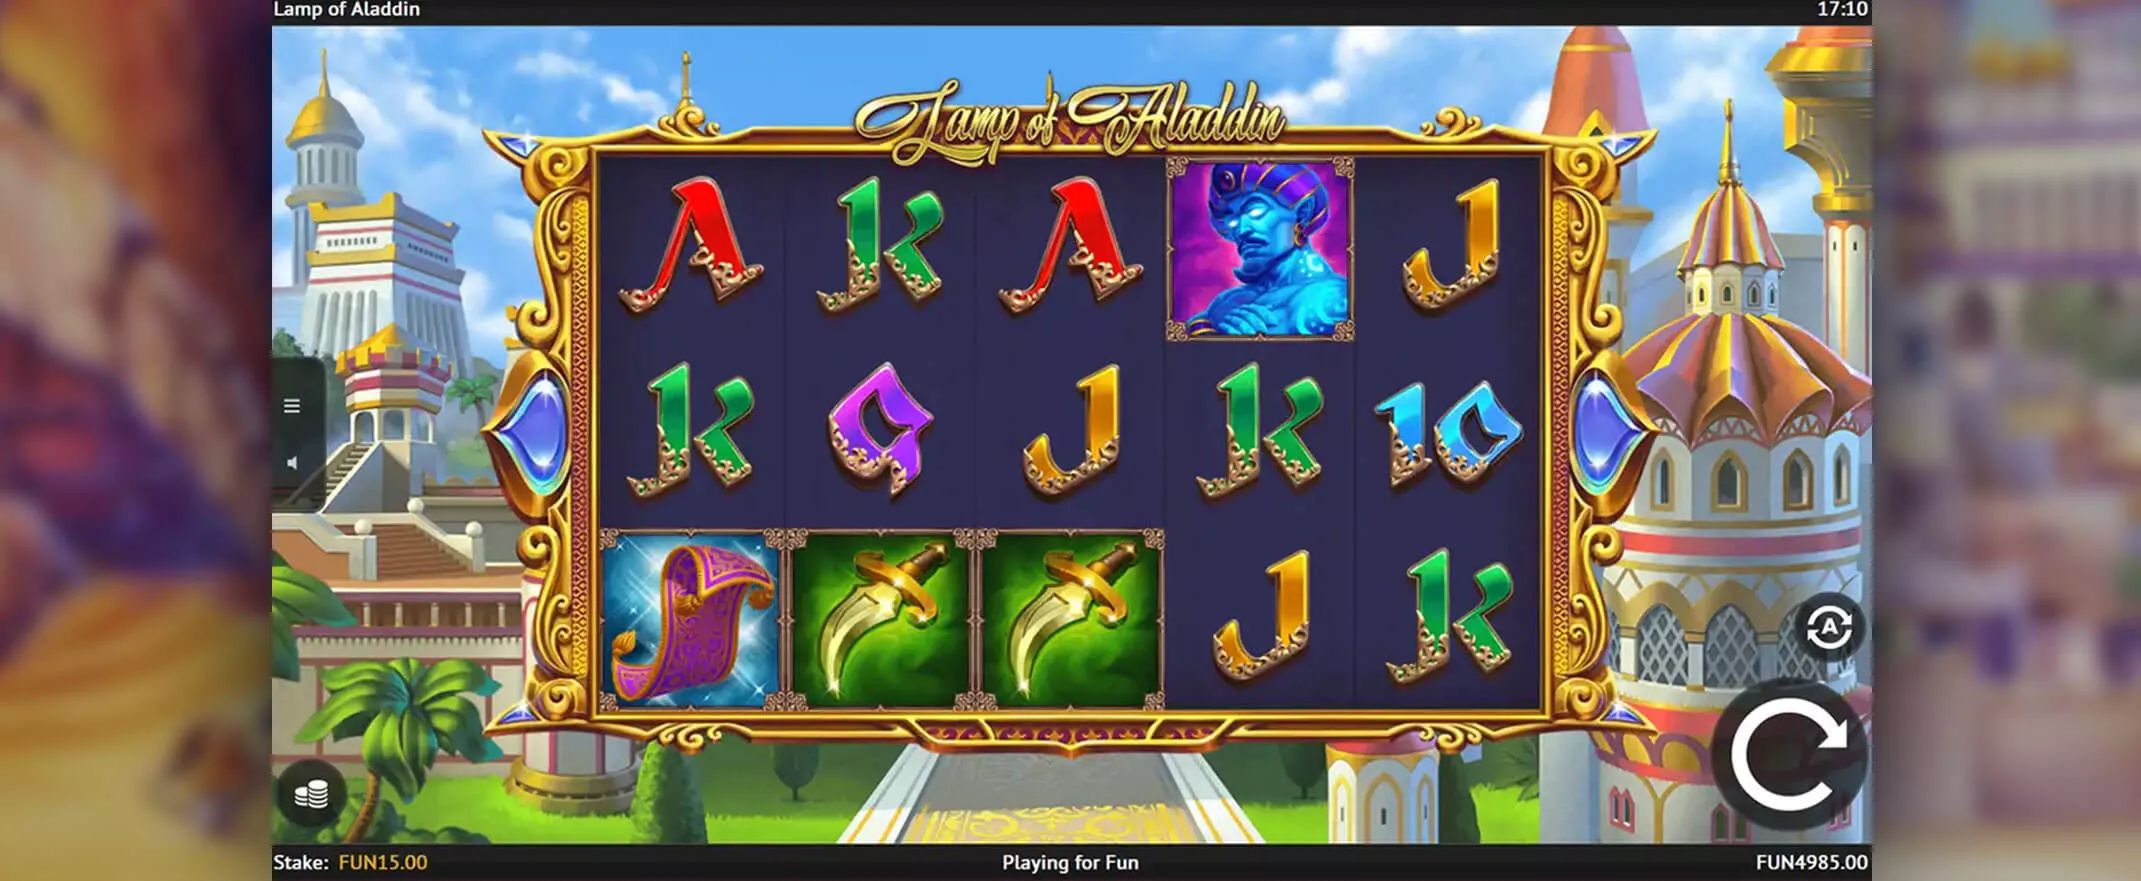 Lamp of Aladdin slot screenshot of the reels